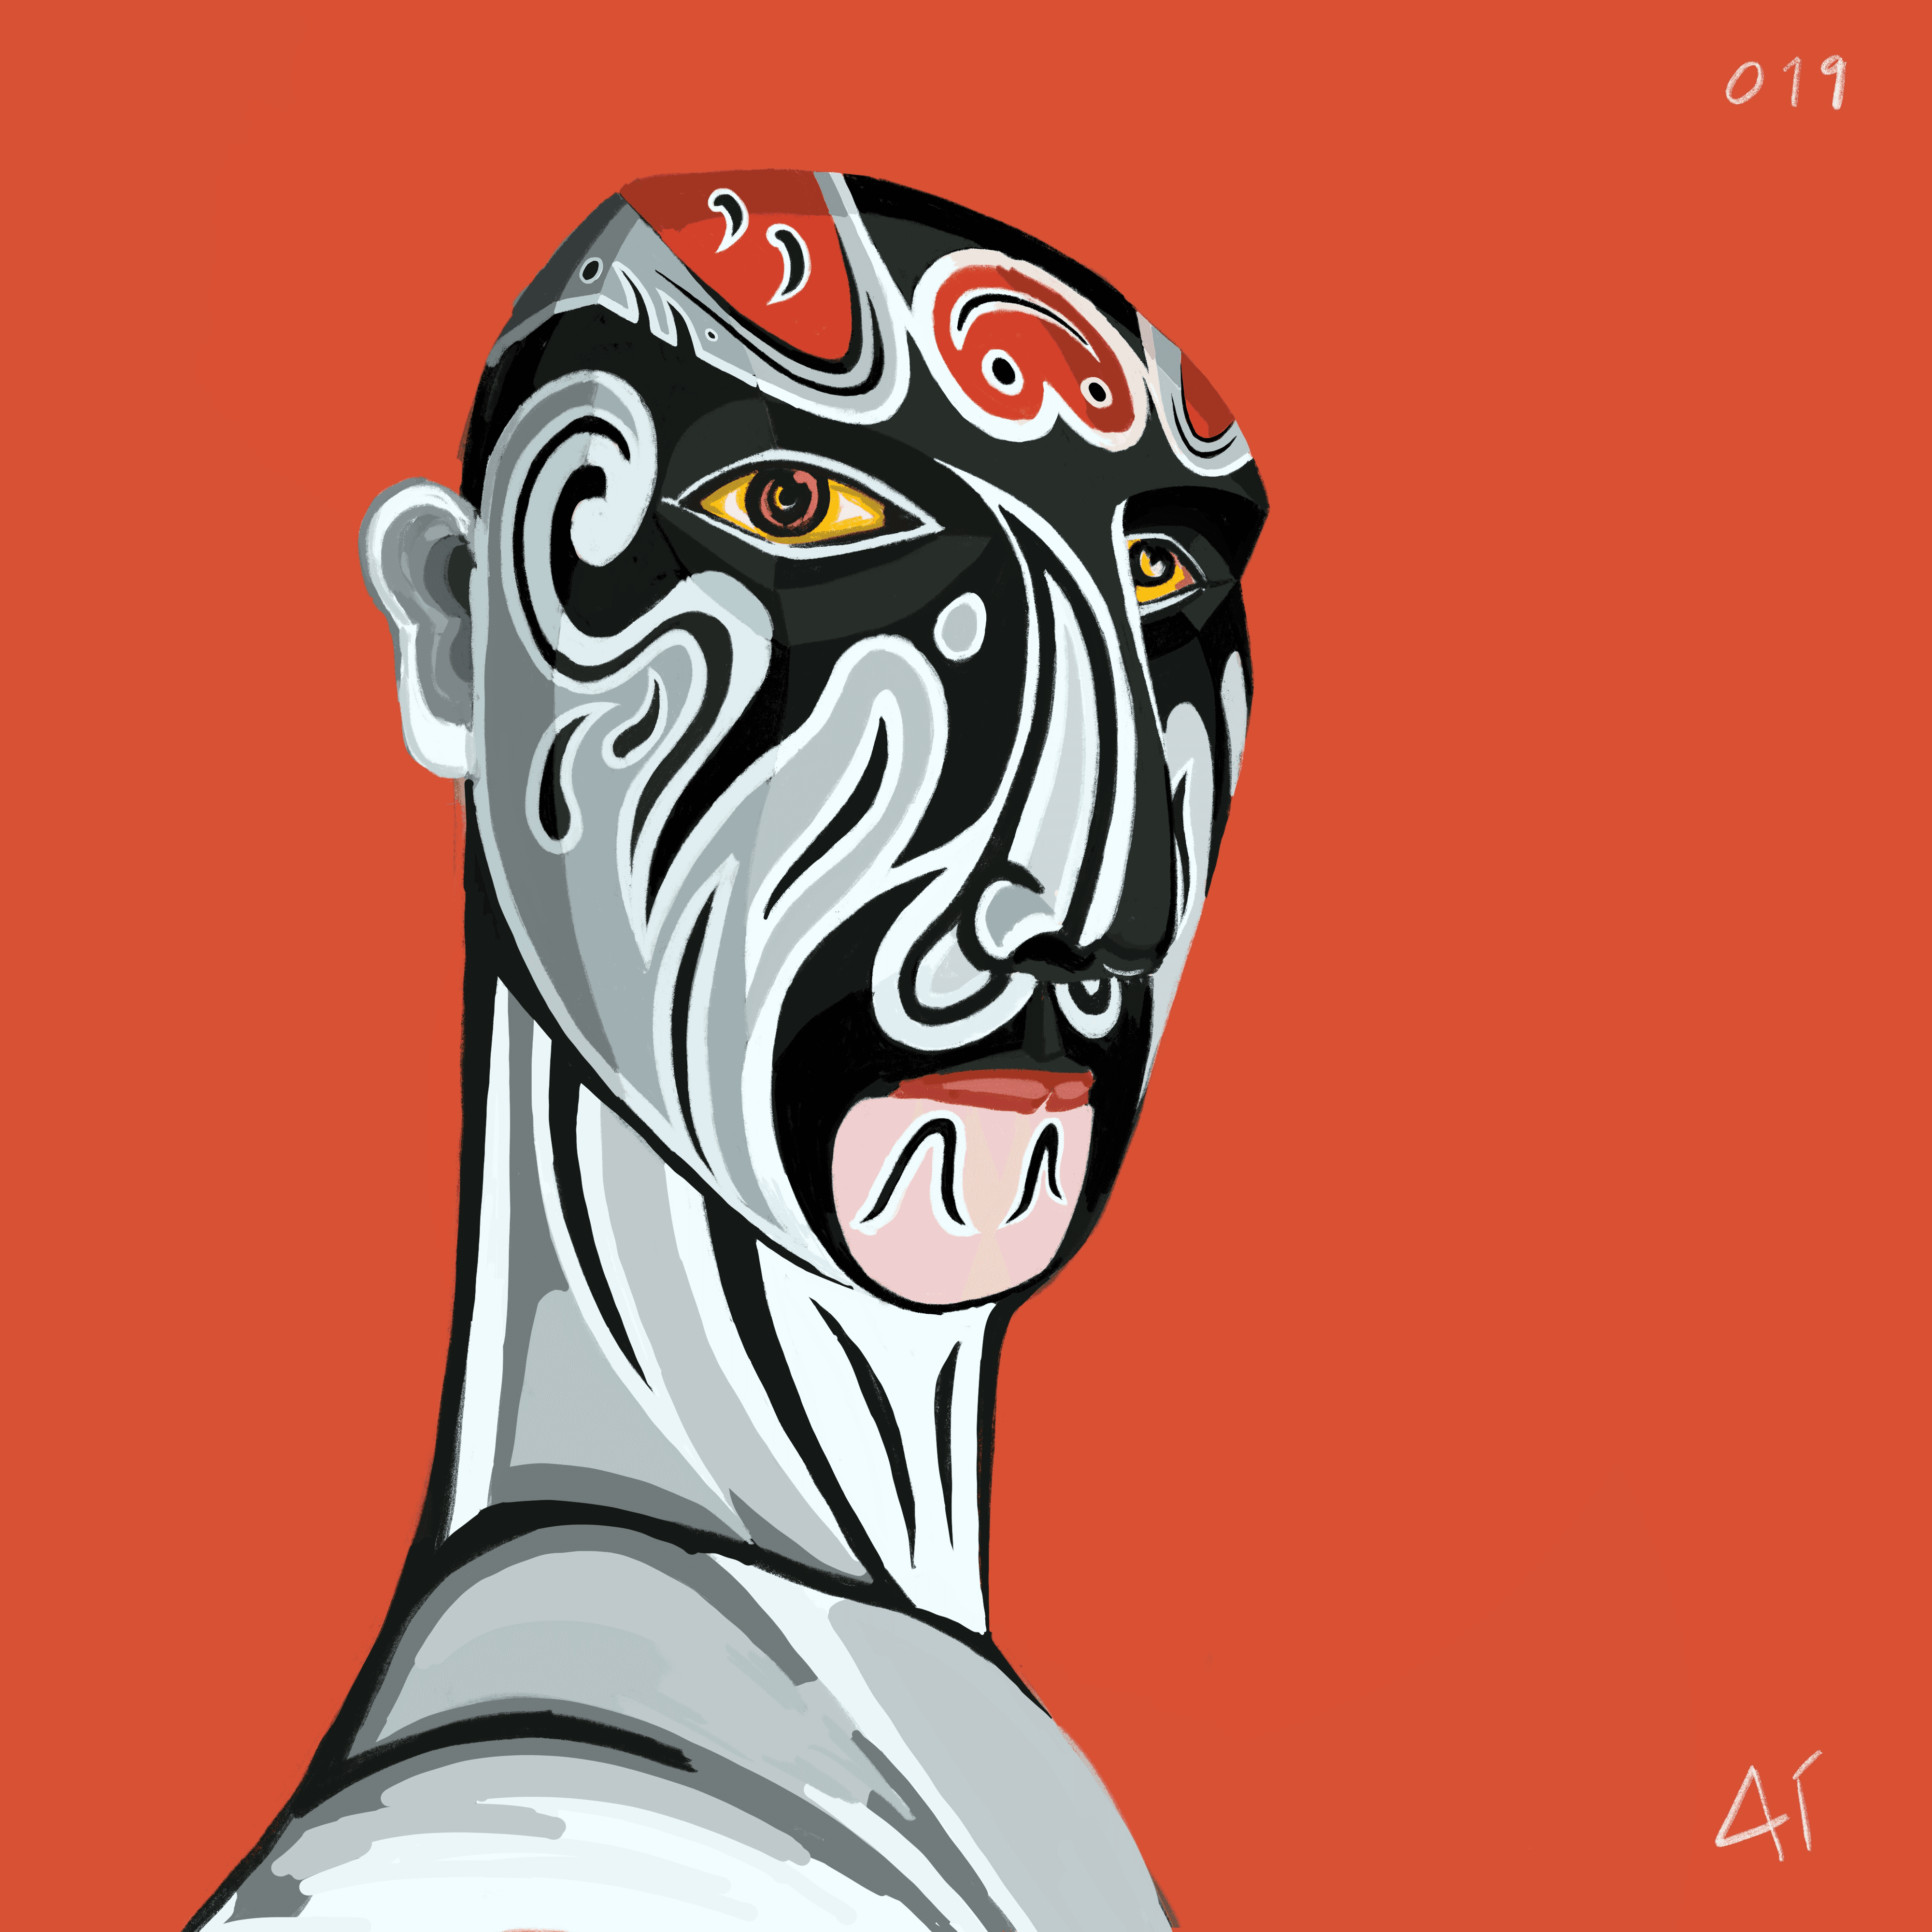 Chinese Ai Mask #007